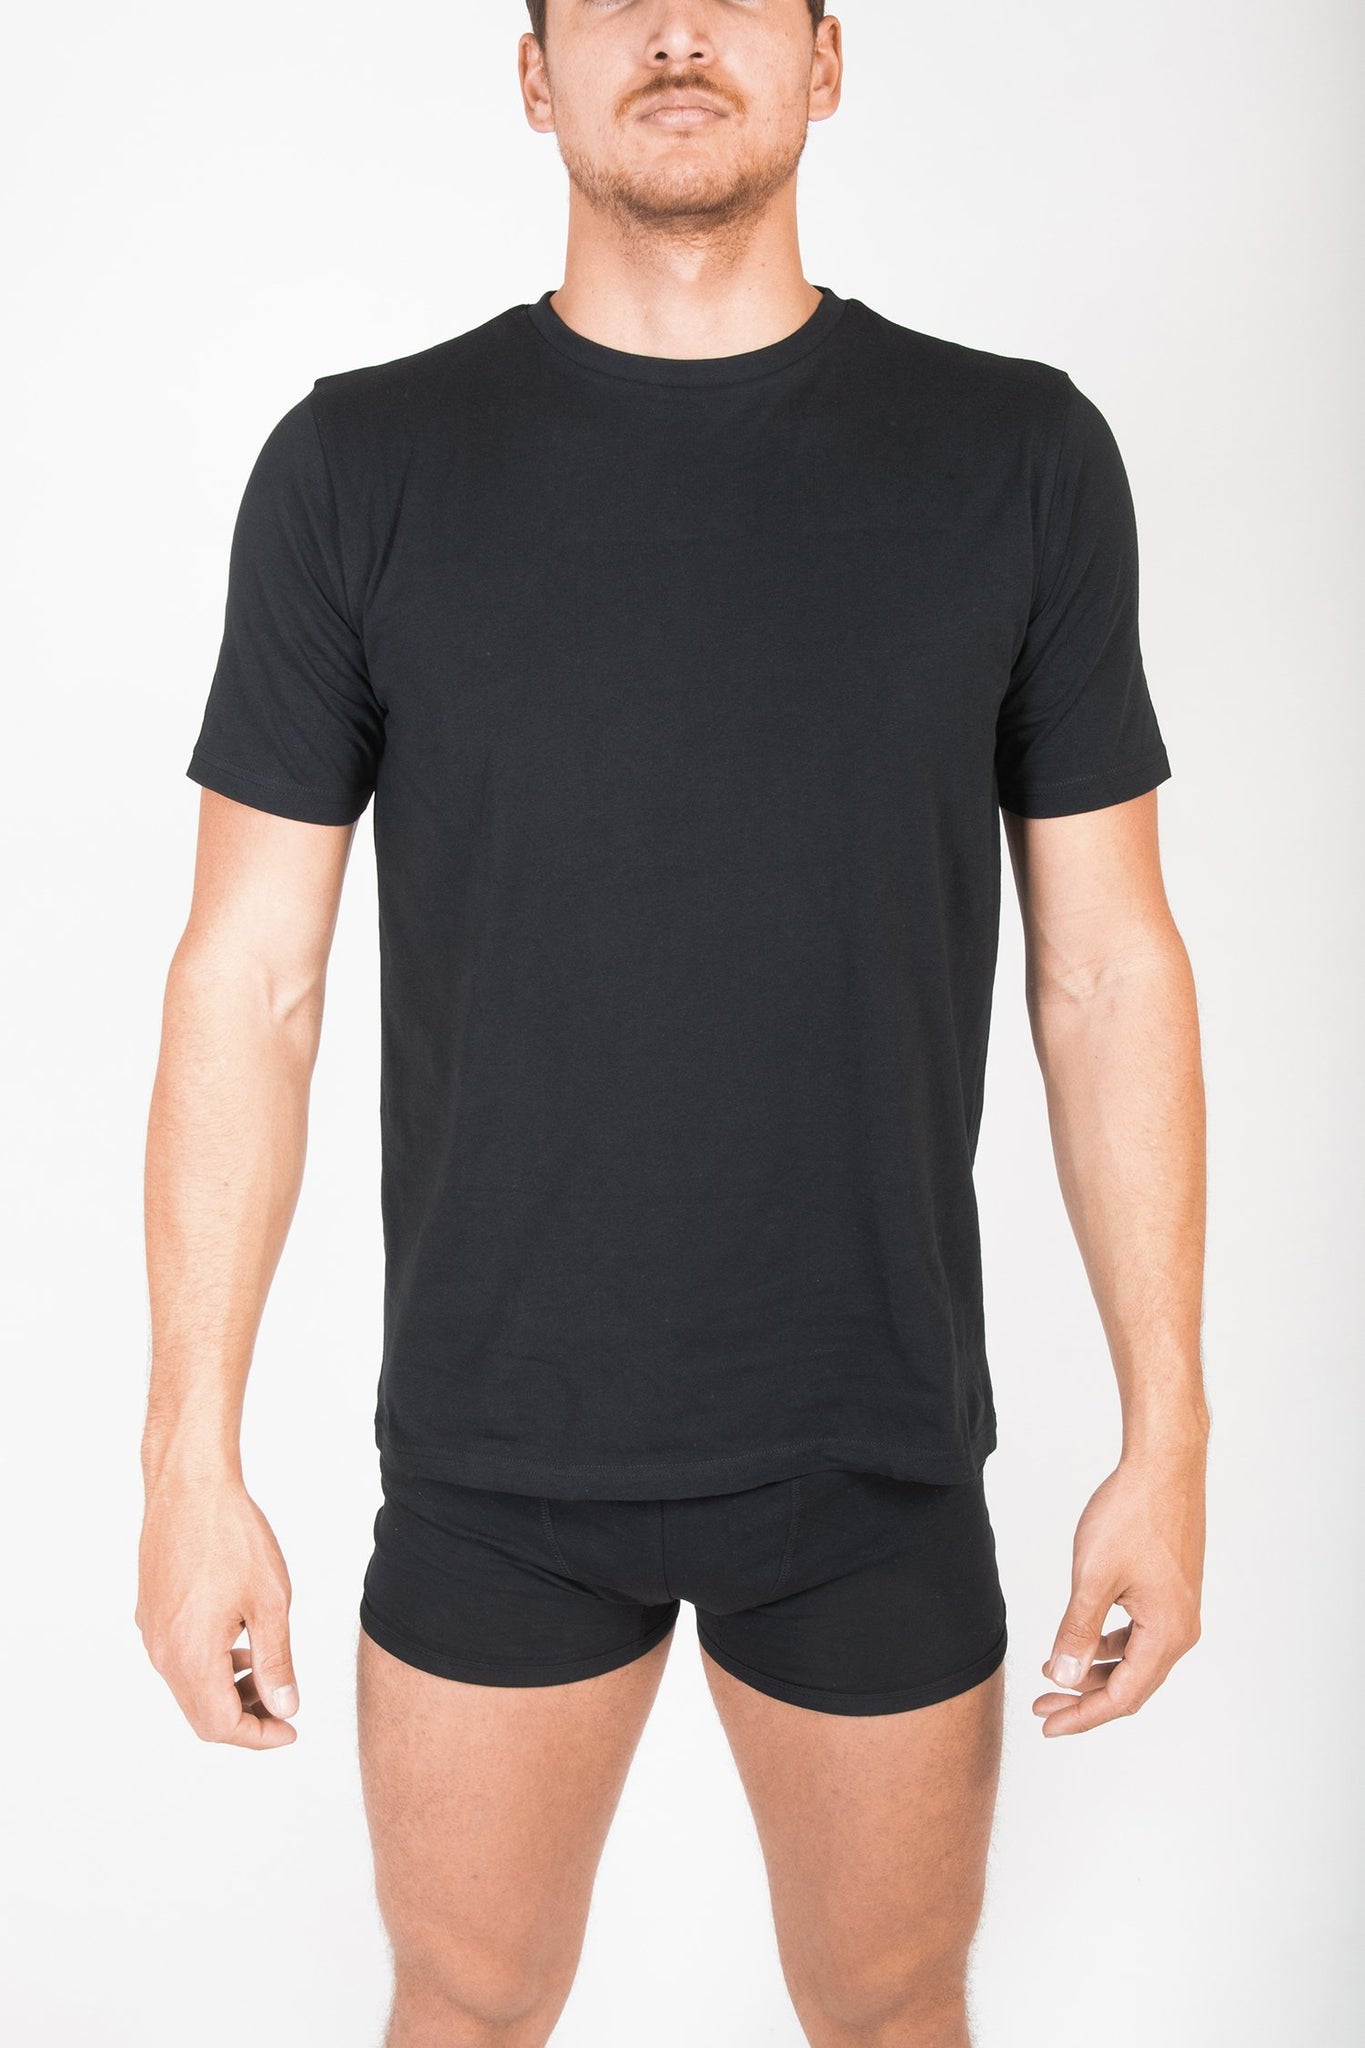 Bodyskin - Basic T-shirt : Black